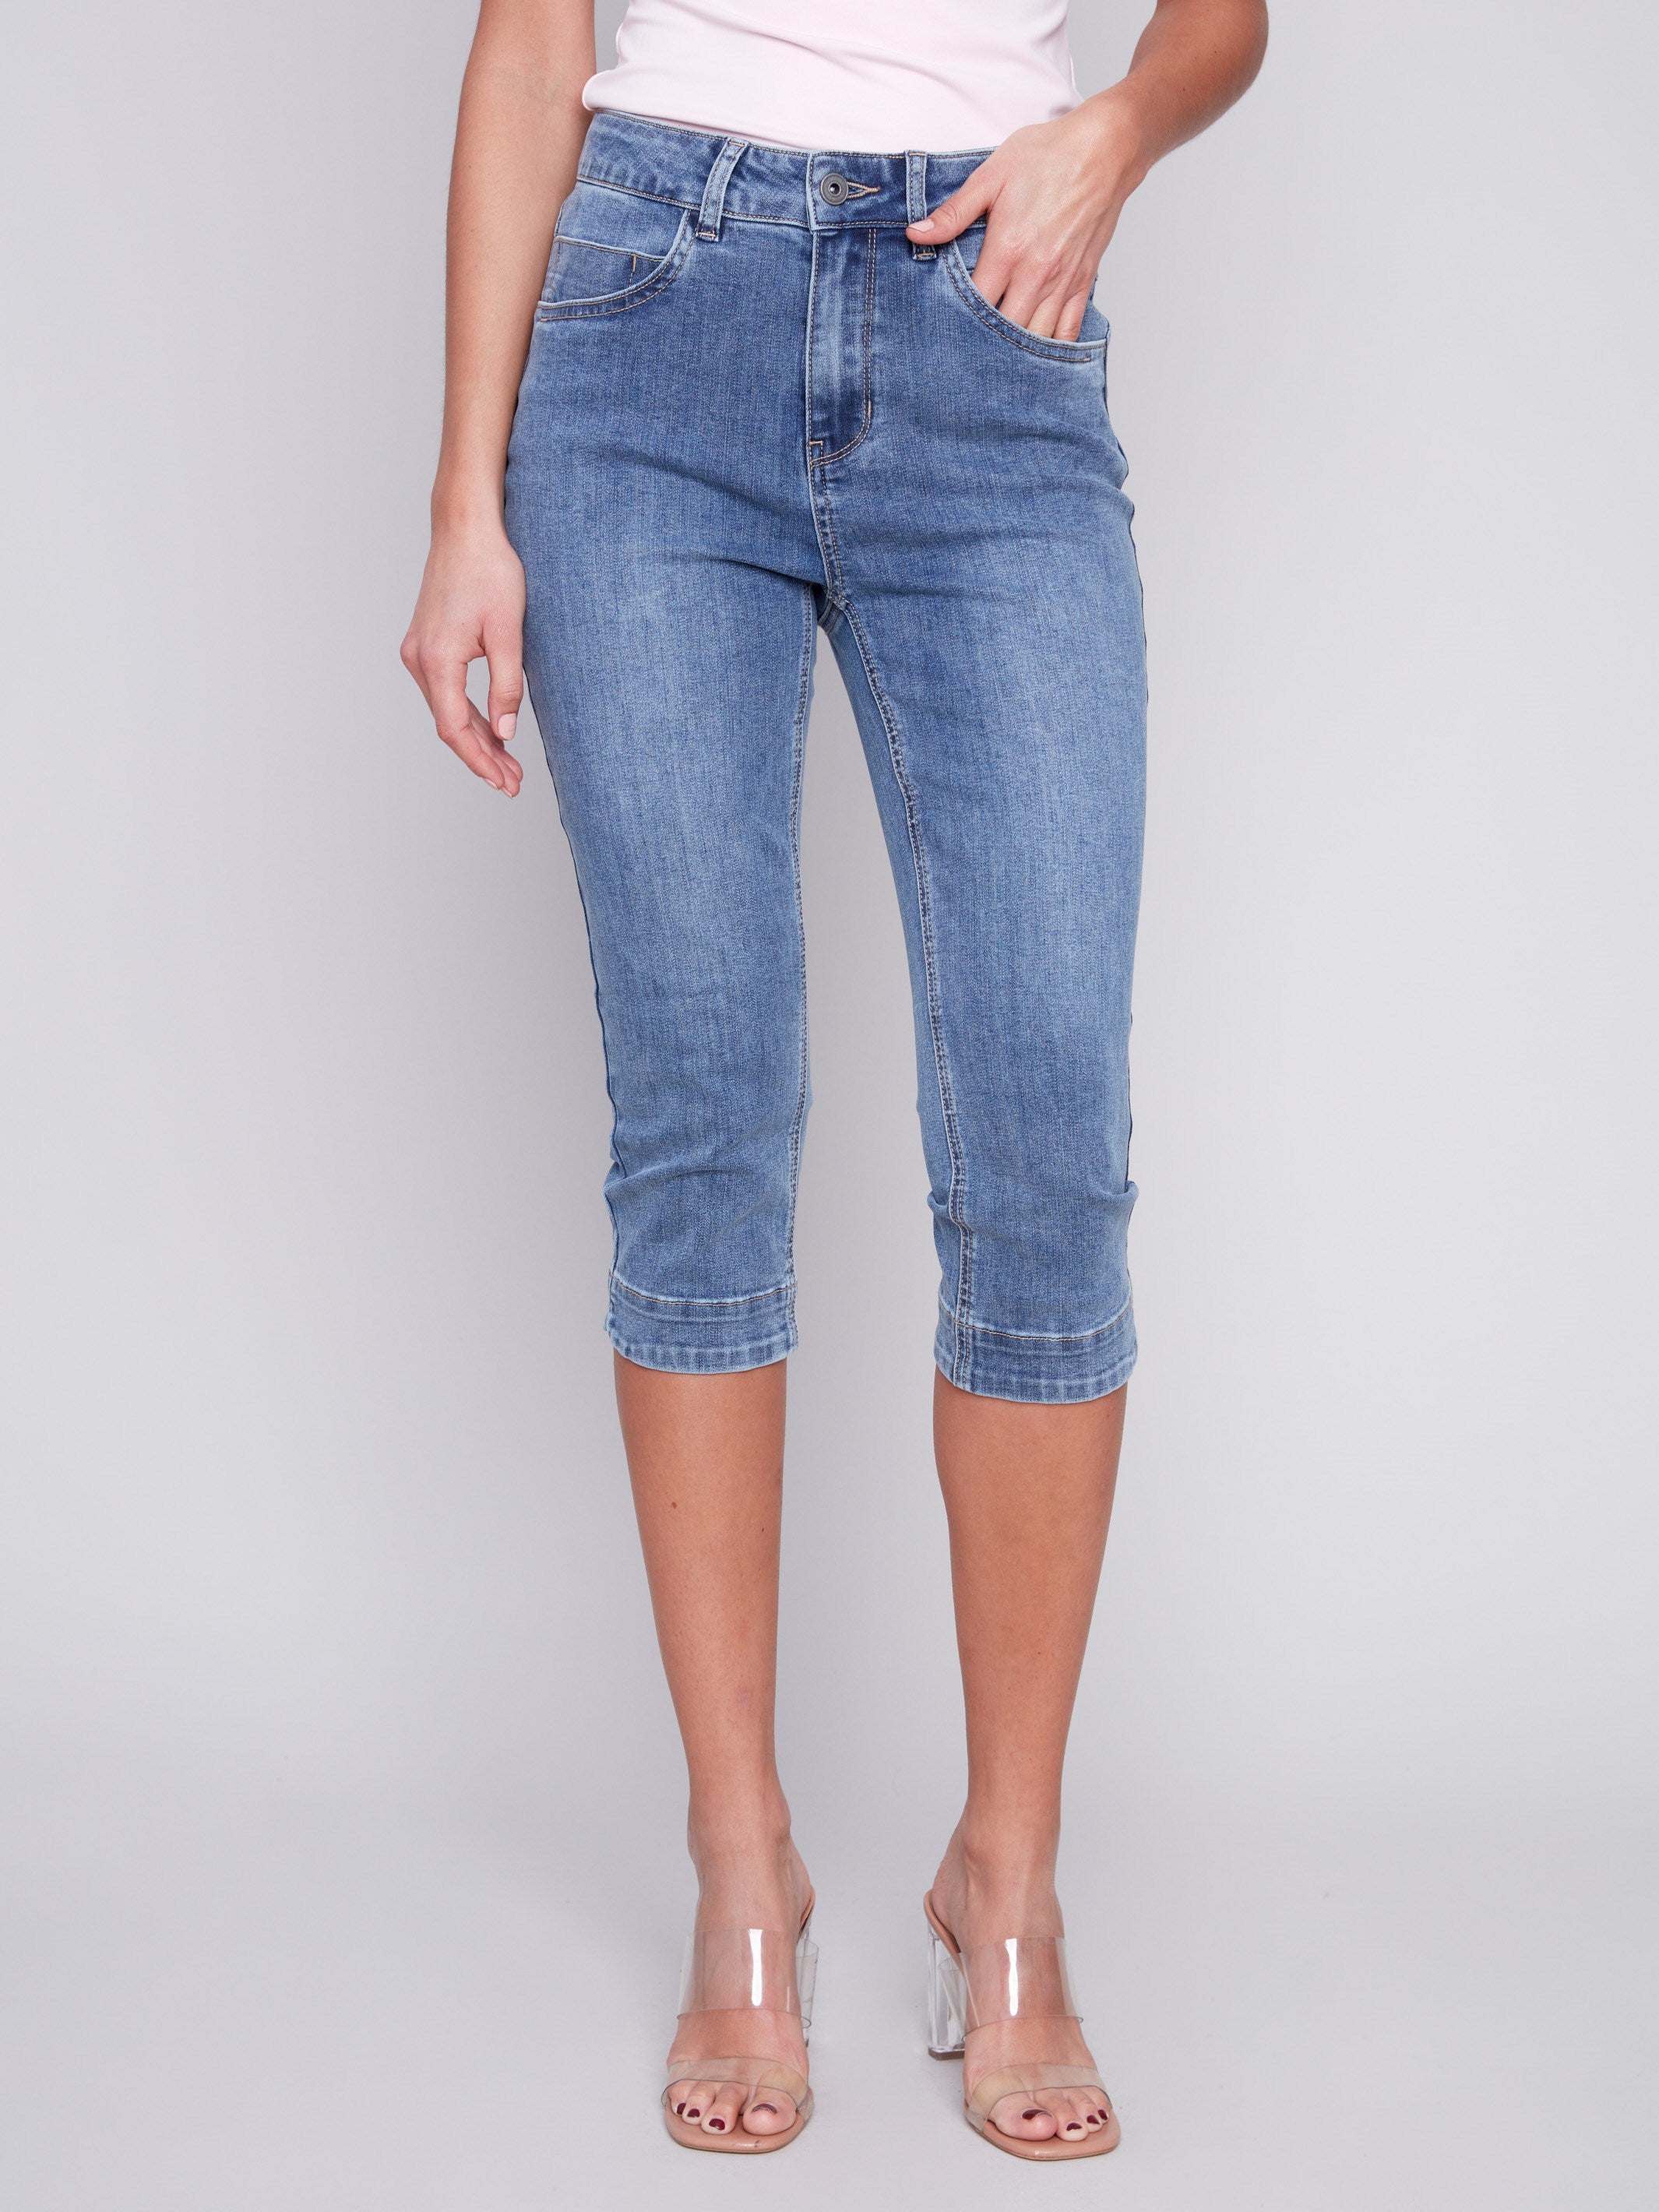 Charlie B Knee High Capri Jeans - Medium Blue - Image 2